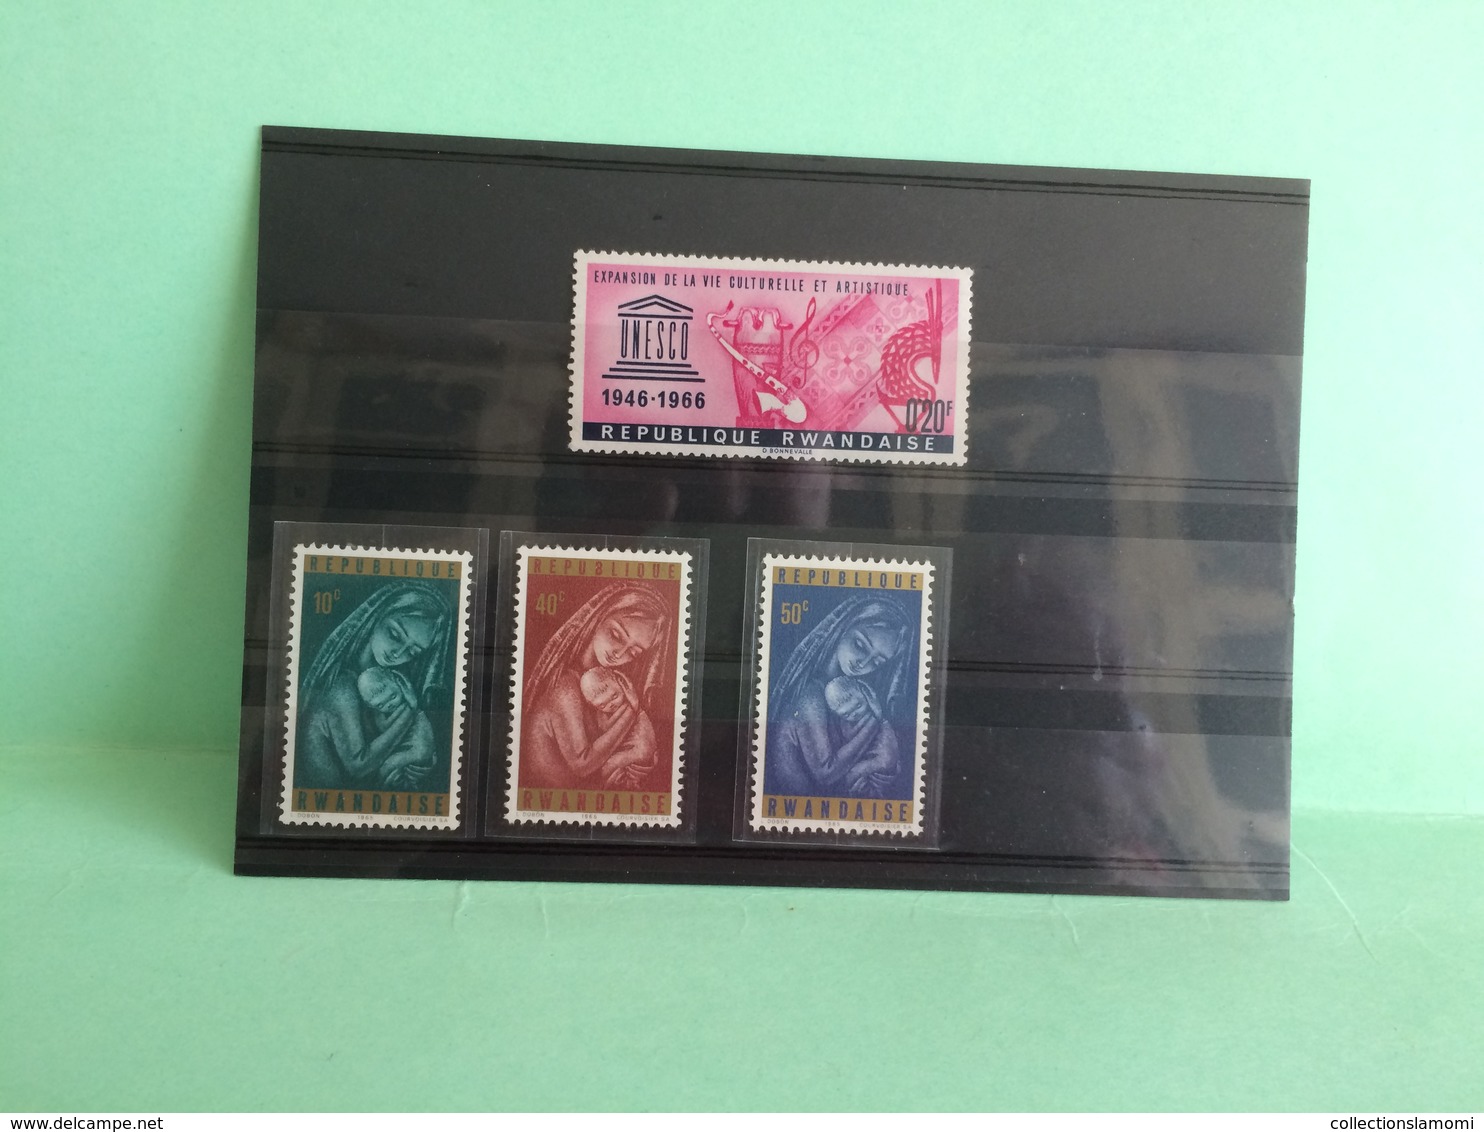 Lot timbres neufs, Afrique Lot Rwandaise voir photos (n°11)